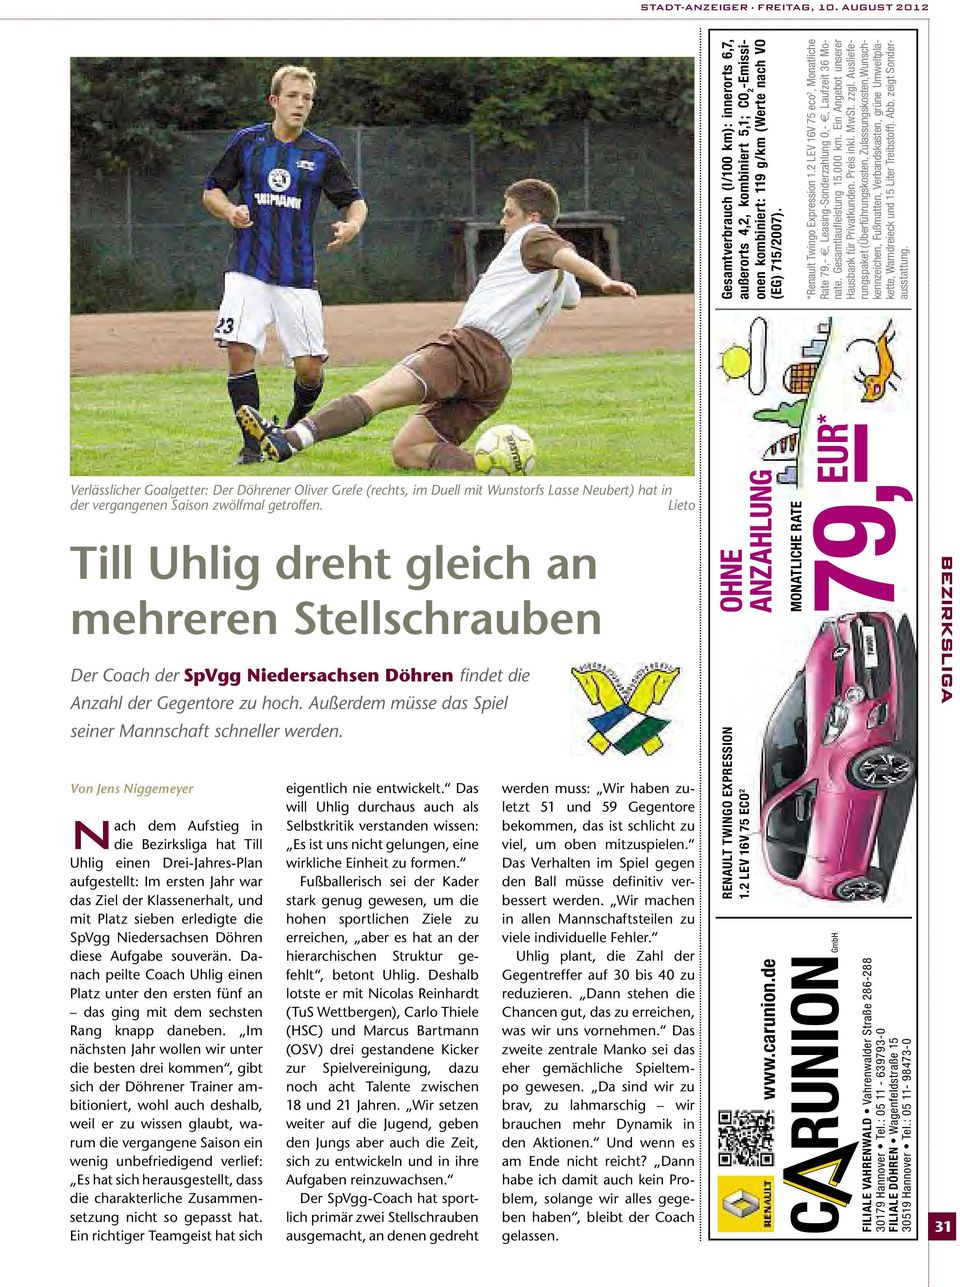 Von Jens Niggemeyer nach dem Aufstieg in die Bezirksliga hat Till Uhlig einen Drei-Jahres-Plan aufgestellt: Im ersten Jahr war das Ziel der Klassenerhalt, und mit Platz sieben erledigte die SpVgg